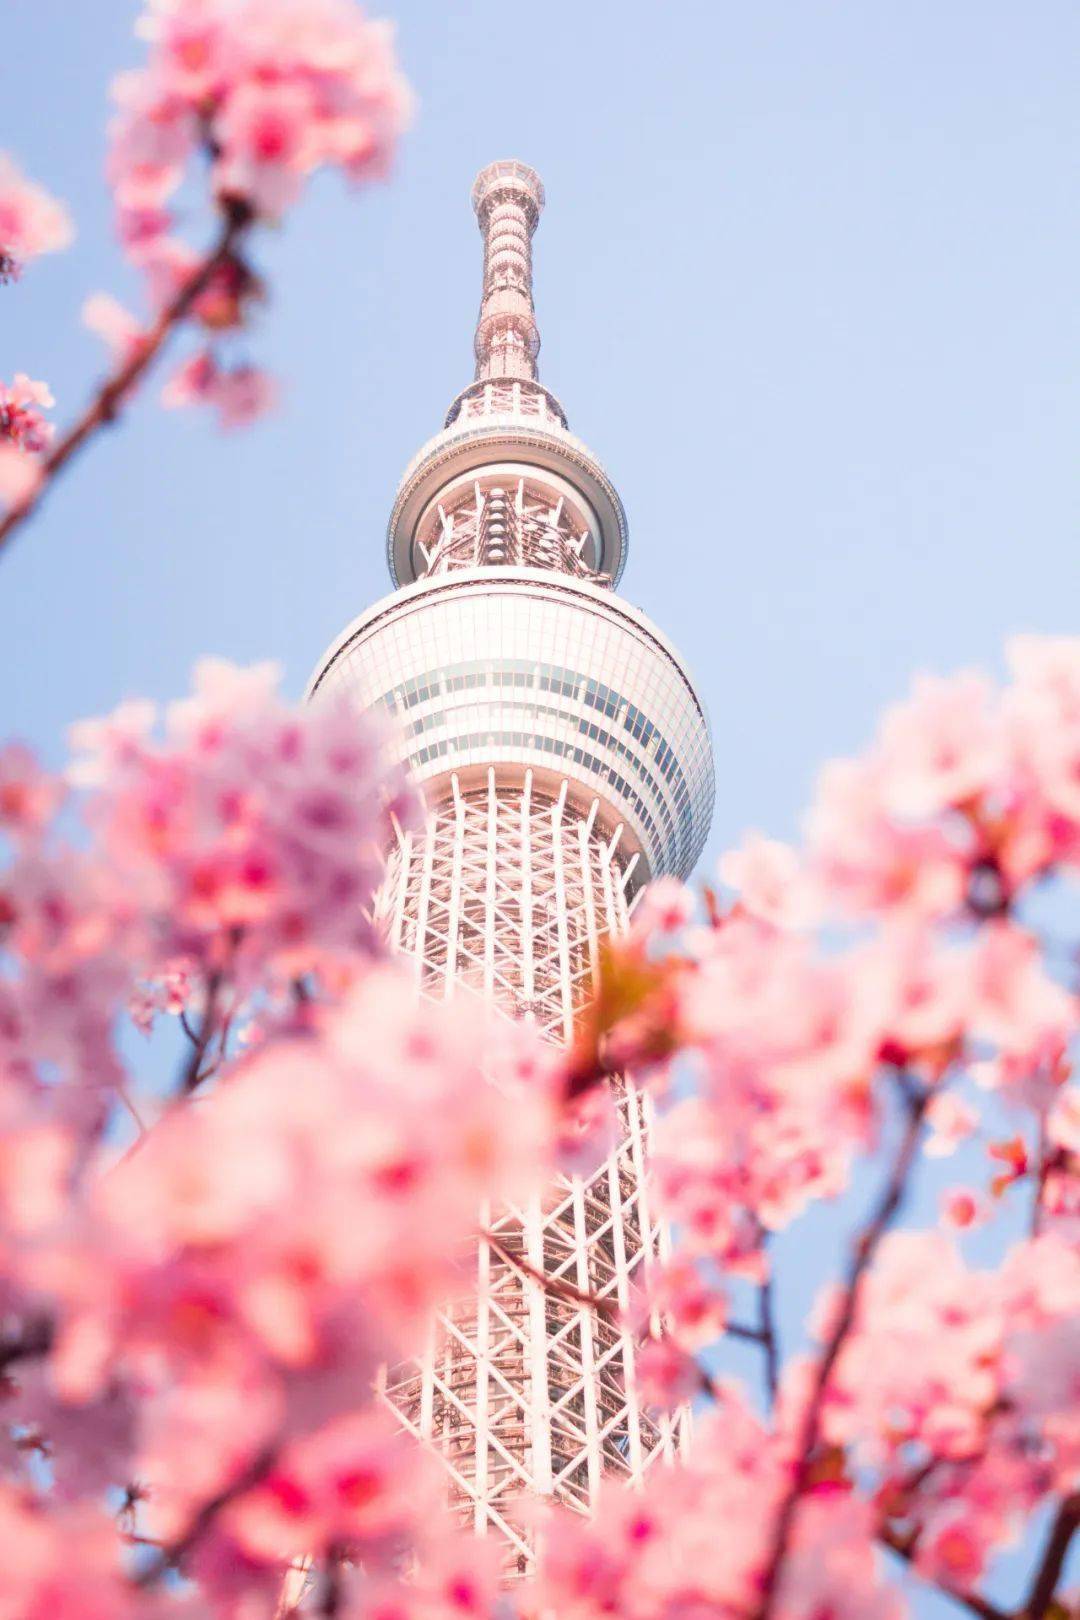 樱花似乎给东京繁忙的景象带来了柔美和宁,浪漫的樱花似乎把晴空塔